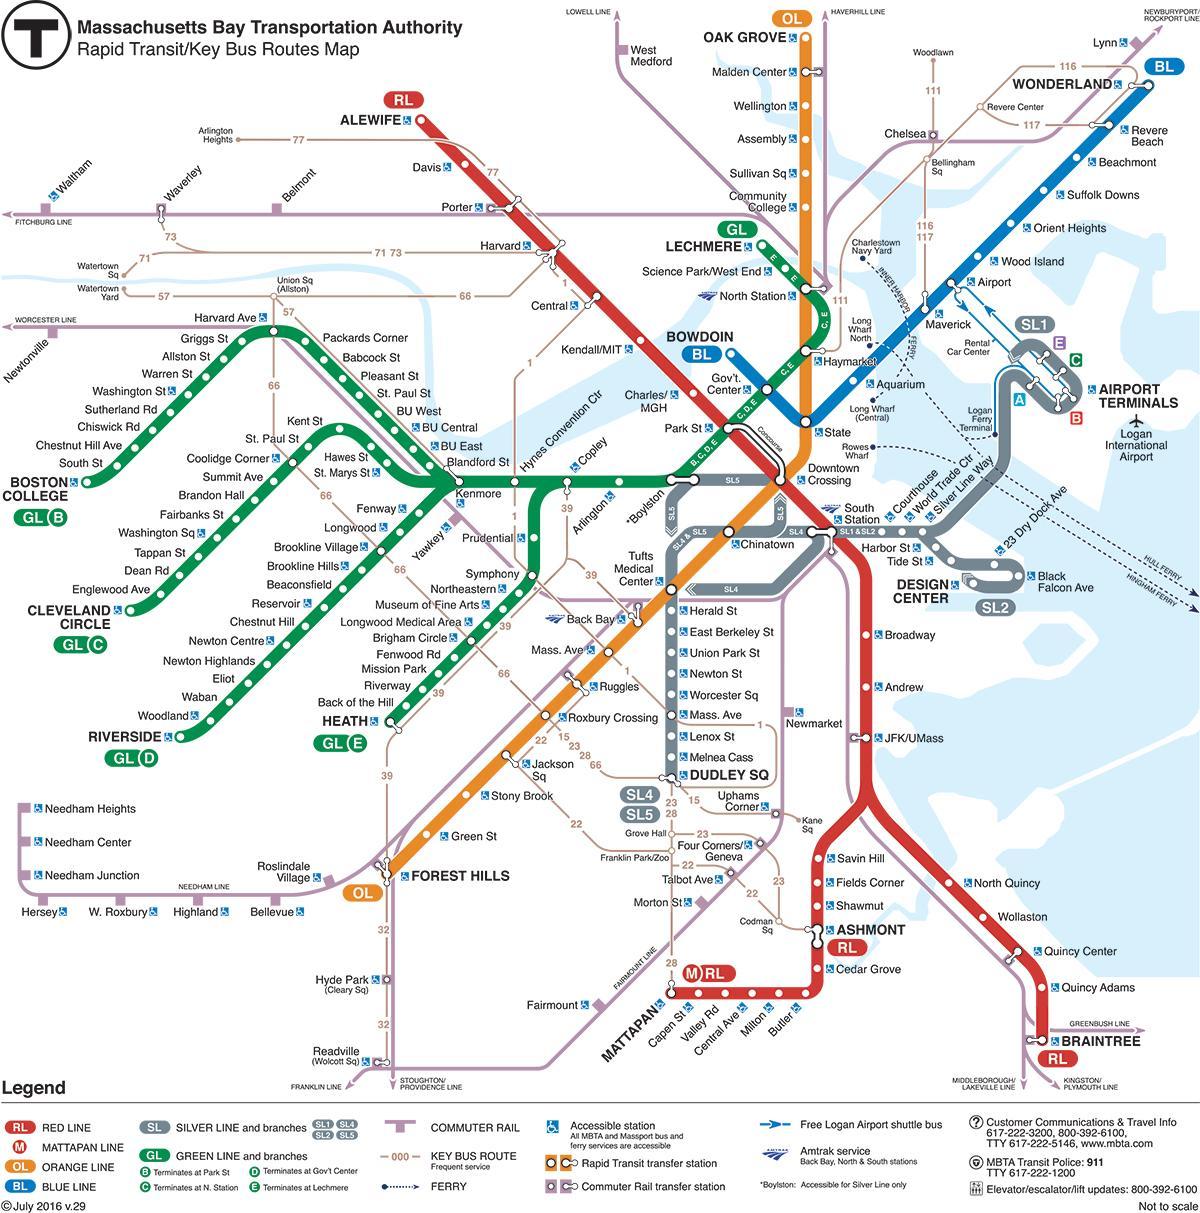 green line ramani Boston